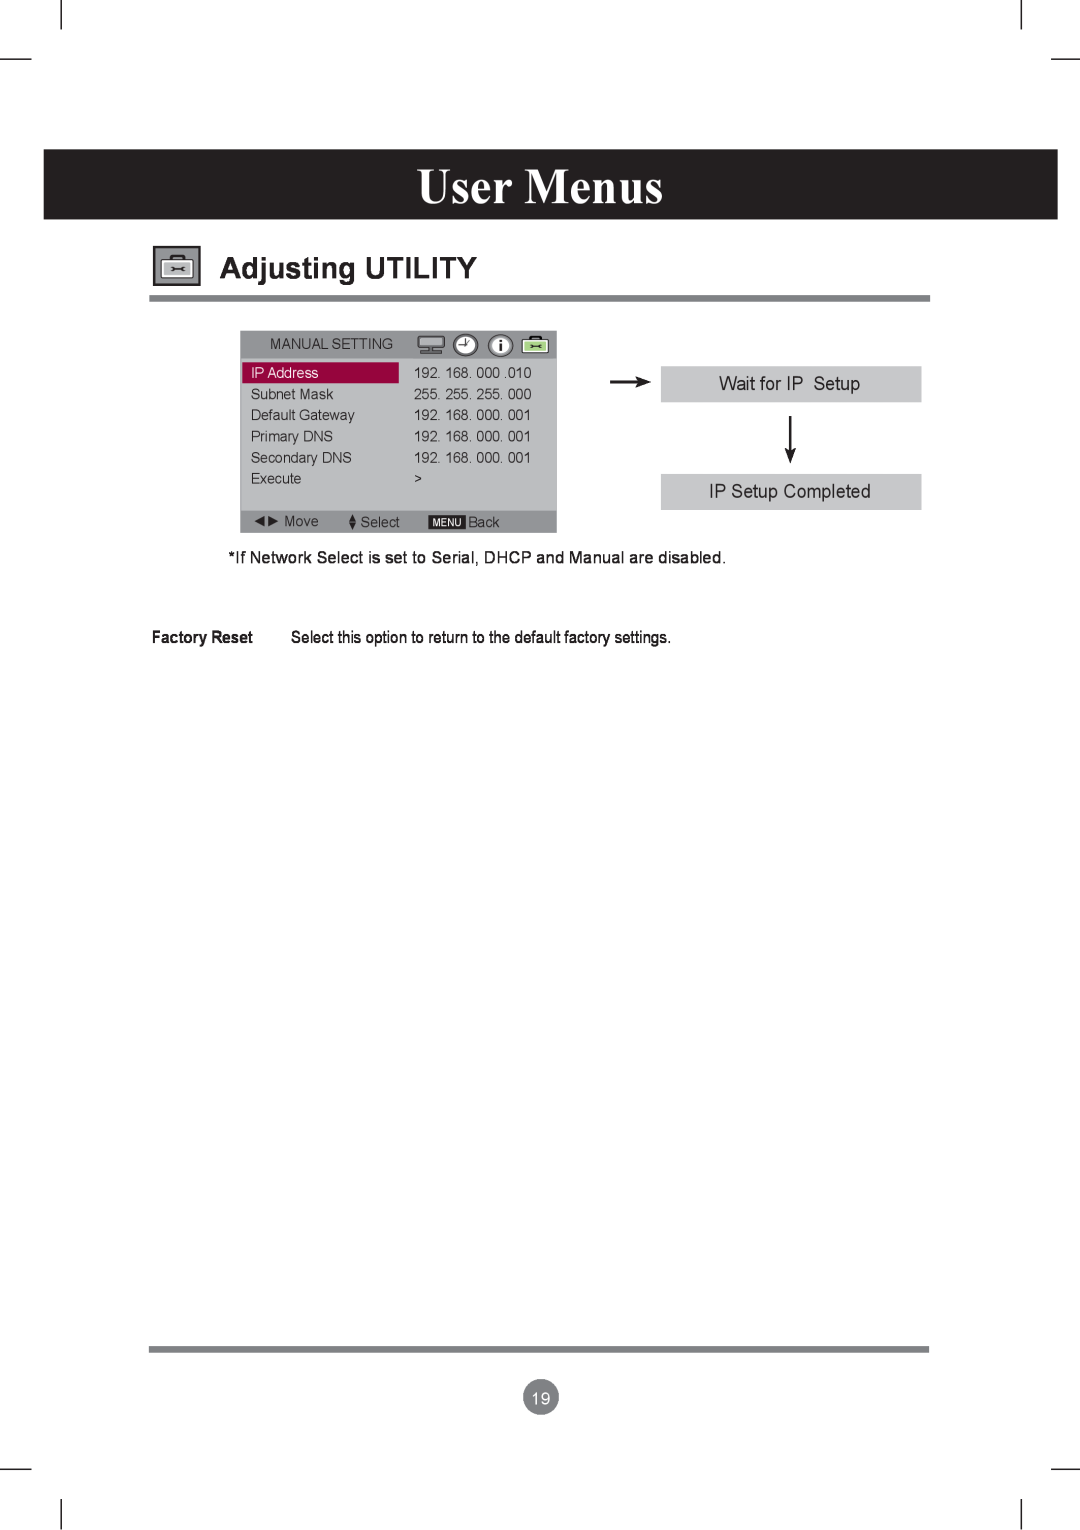 LG Electronics M3801S, M2901S owner manual Adjusting UTILITY, User Menus, Wait for IP Setup IP Setup Completed, IP Address 